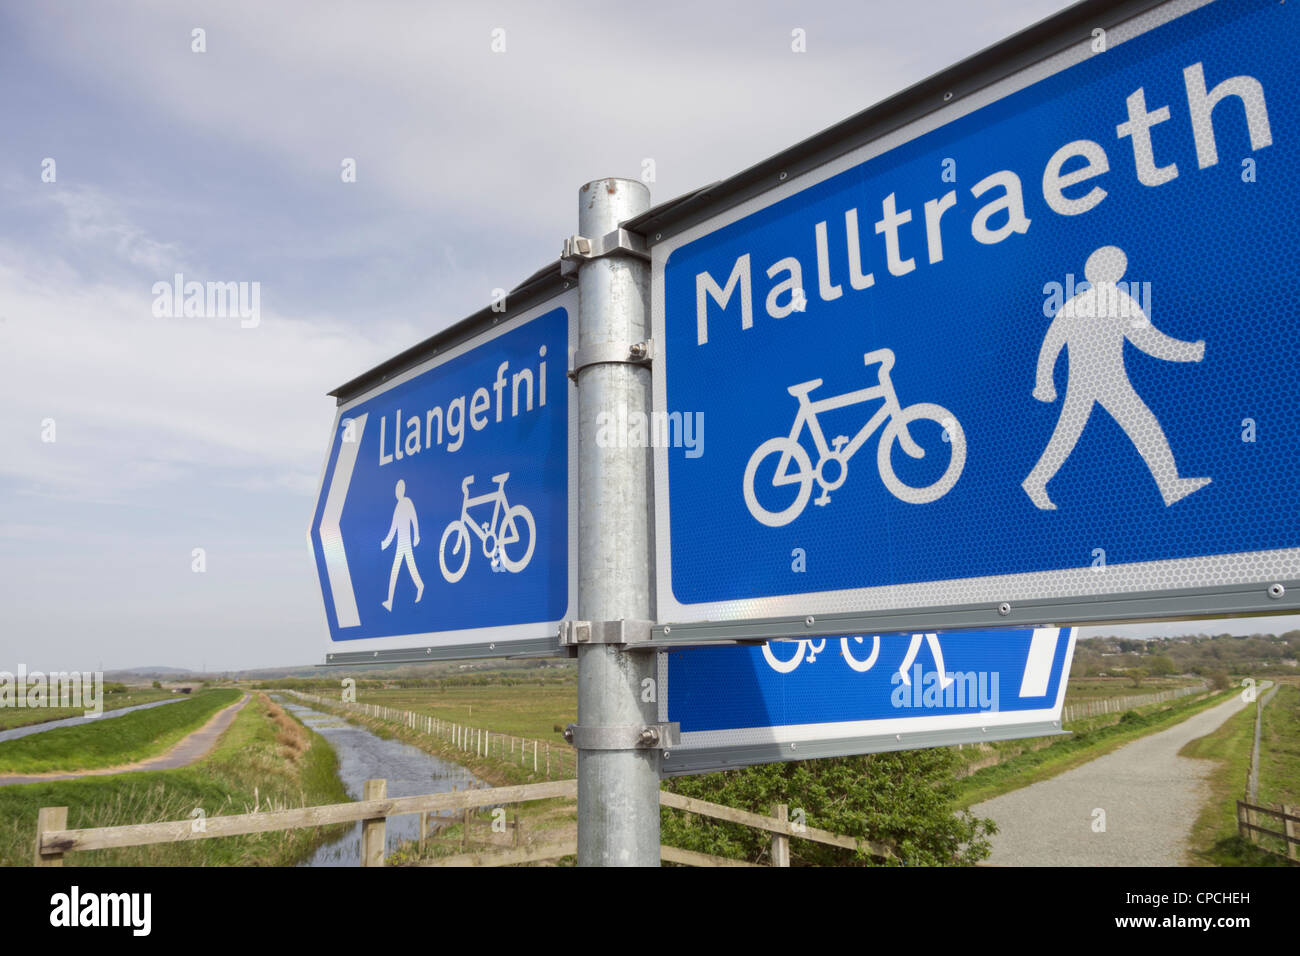 Pista ciclabile Llangefni a Malltraeth Sustrans 8 e segnaletica per il sentiero pedonale sulla pista ciclabile Lôn Las Cefni. Isola di Anglesey Galles Gran Bretagna Foto Stock